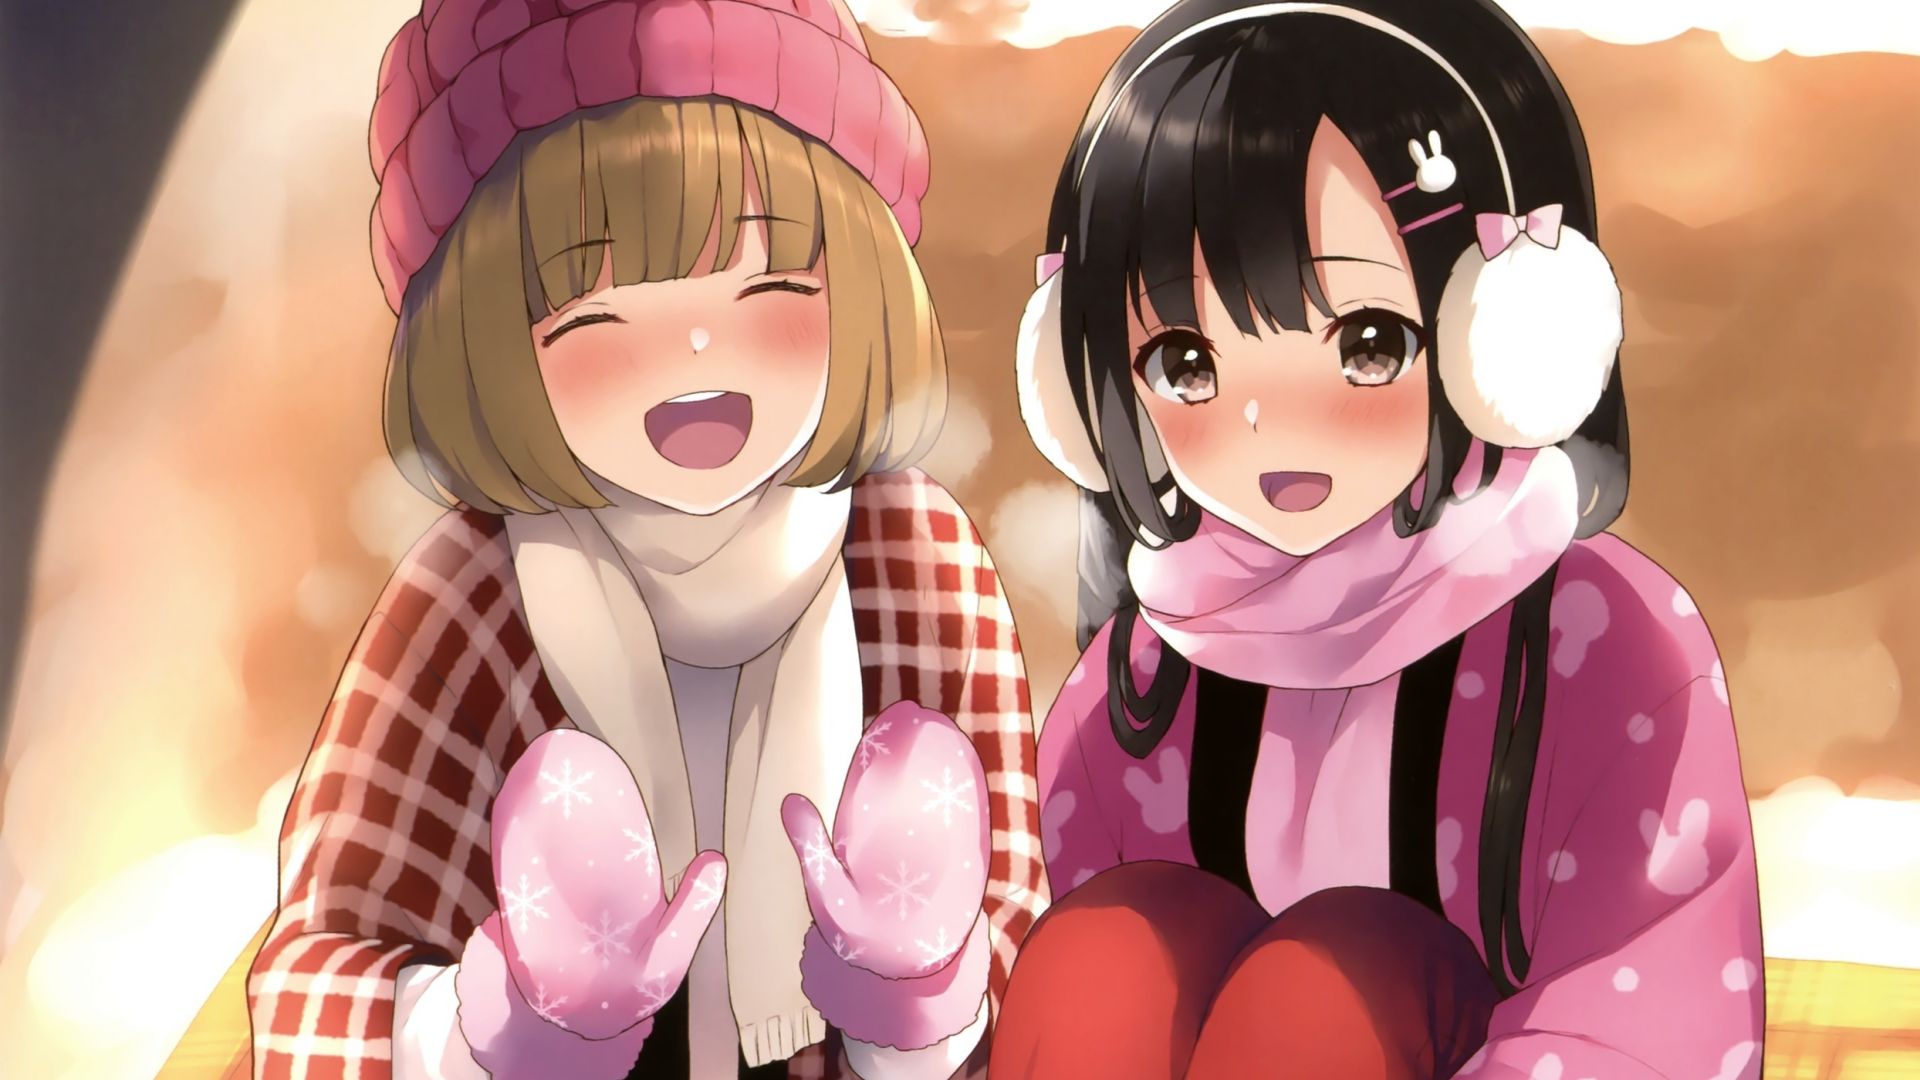 Desktop Wallpaper Winter Cute Anime Girls Friends HD Image